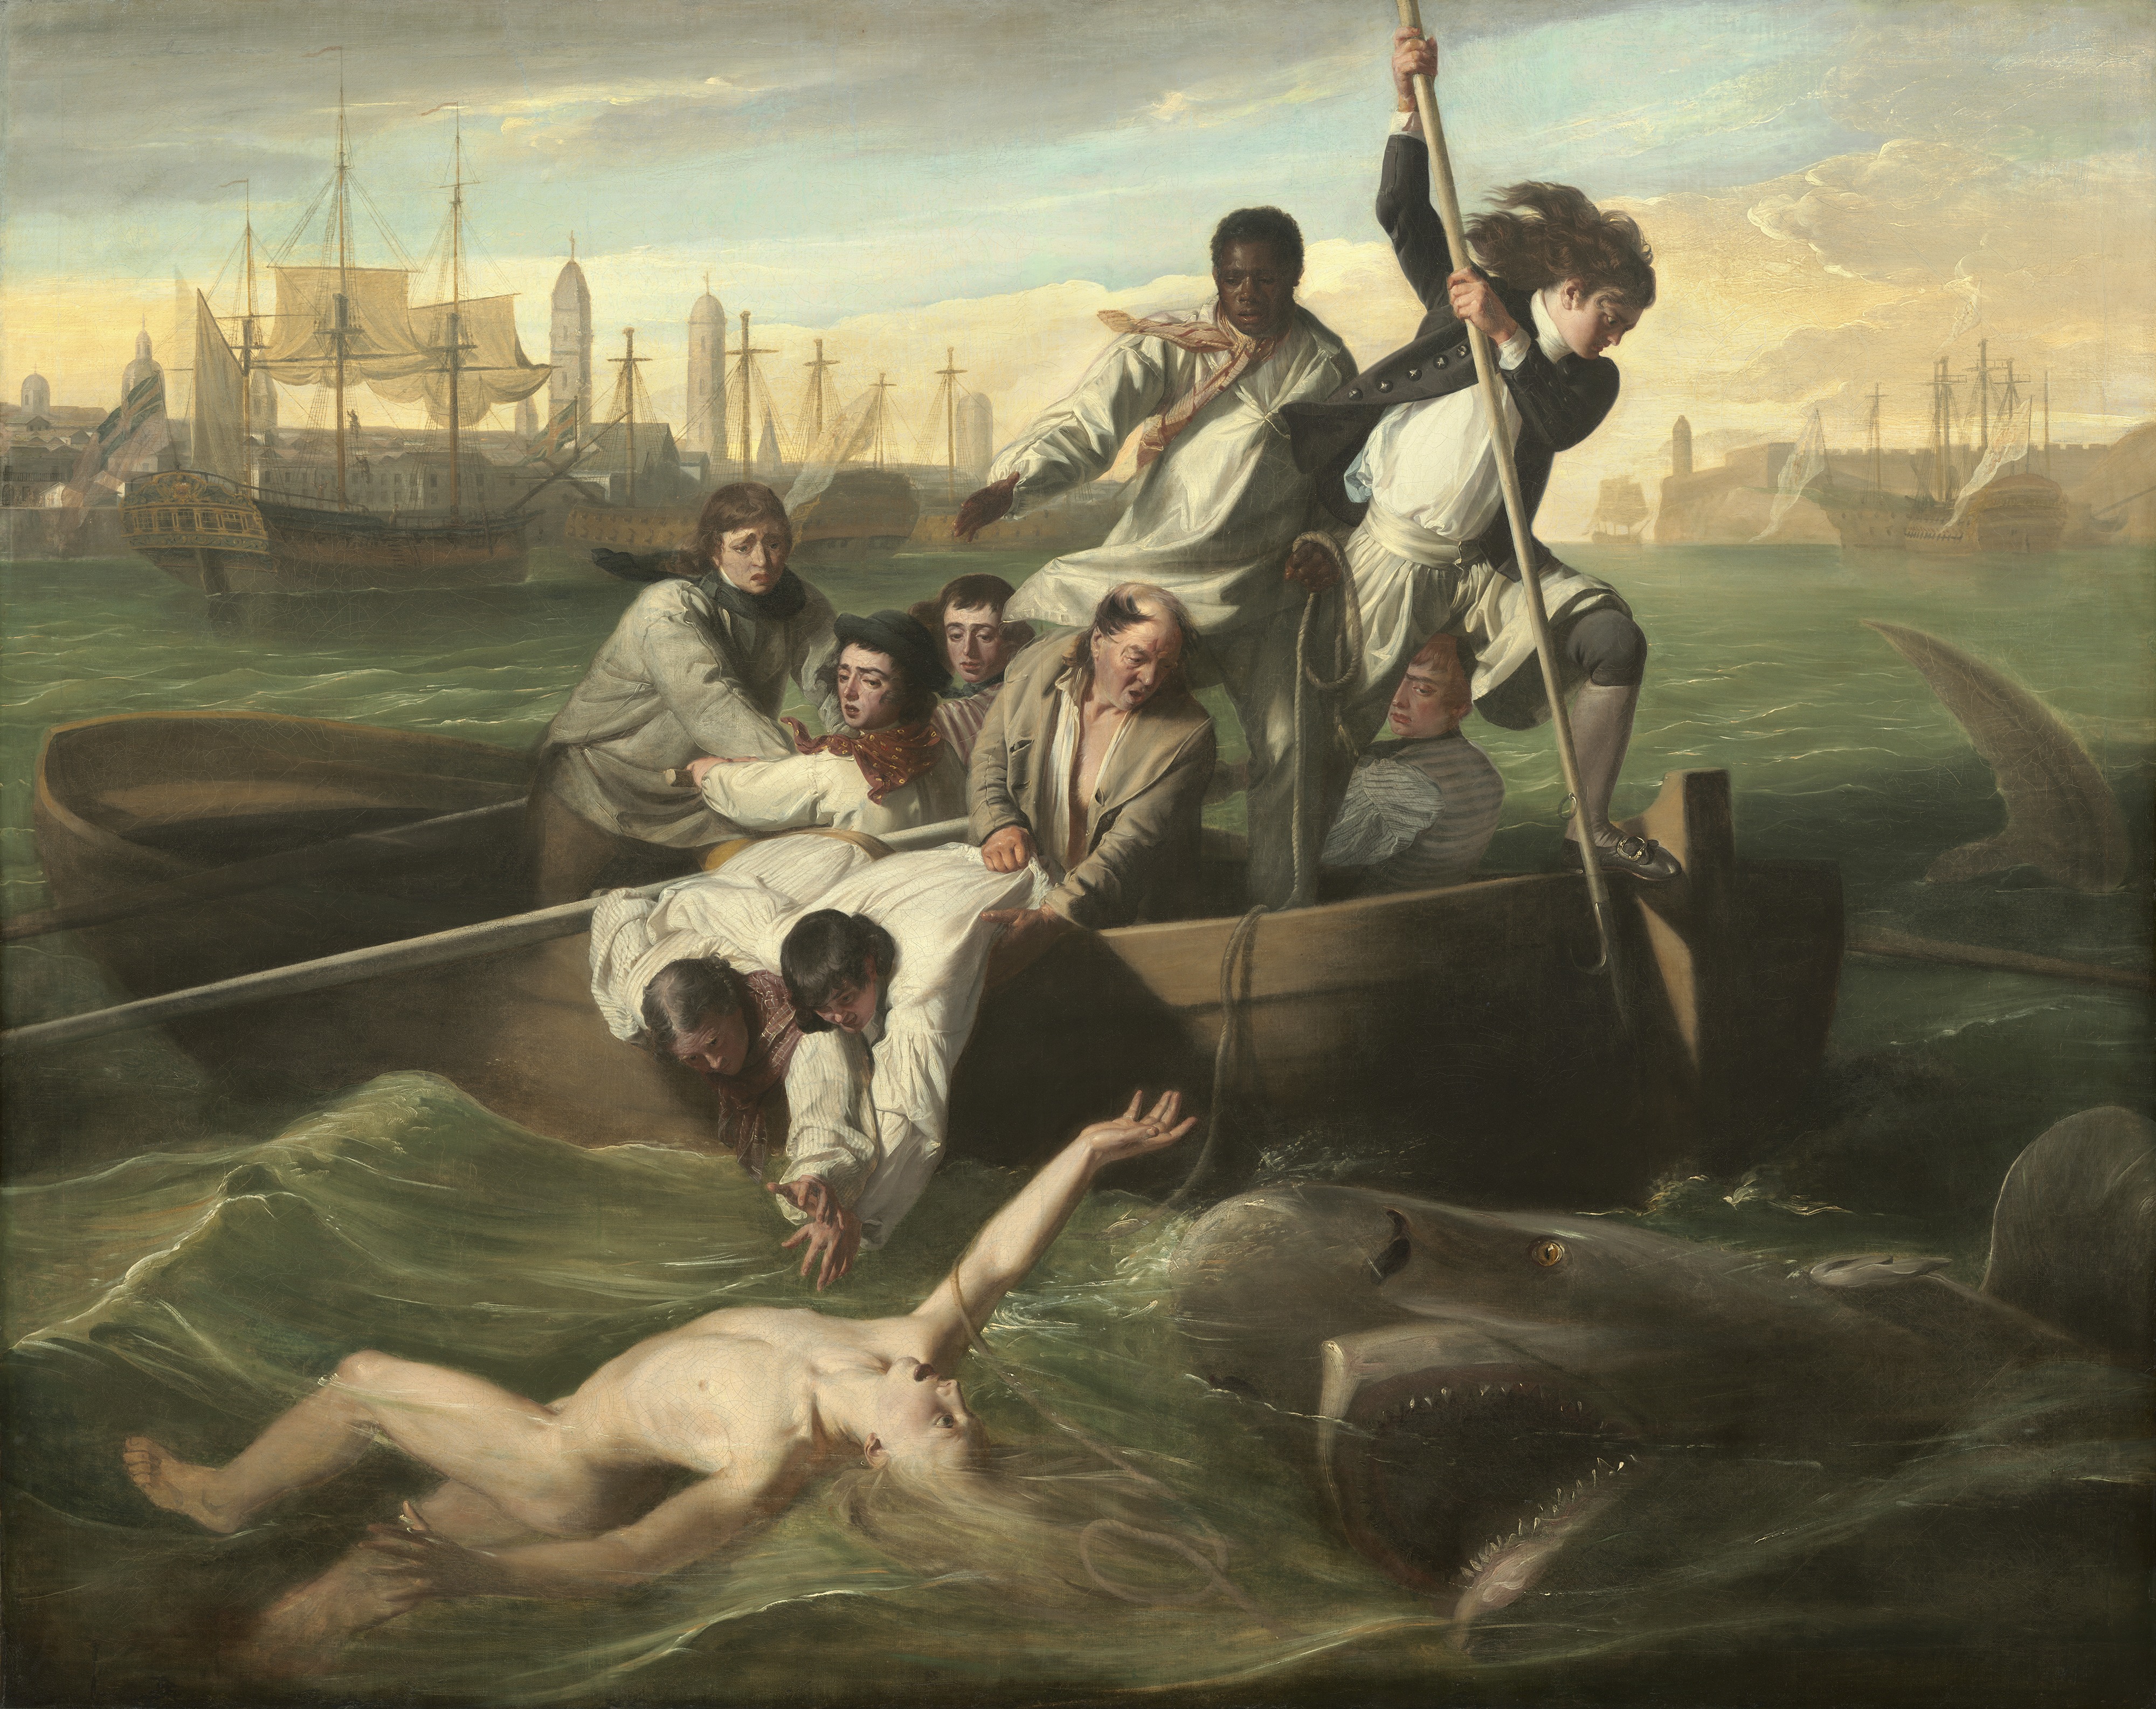 Watson y el tiburón by John Singleton Copley - 1778 National Gallery of Art